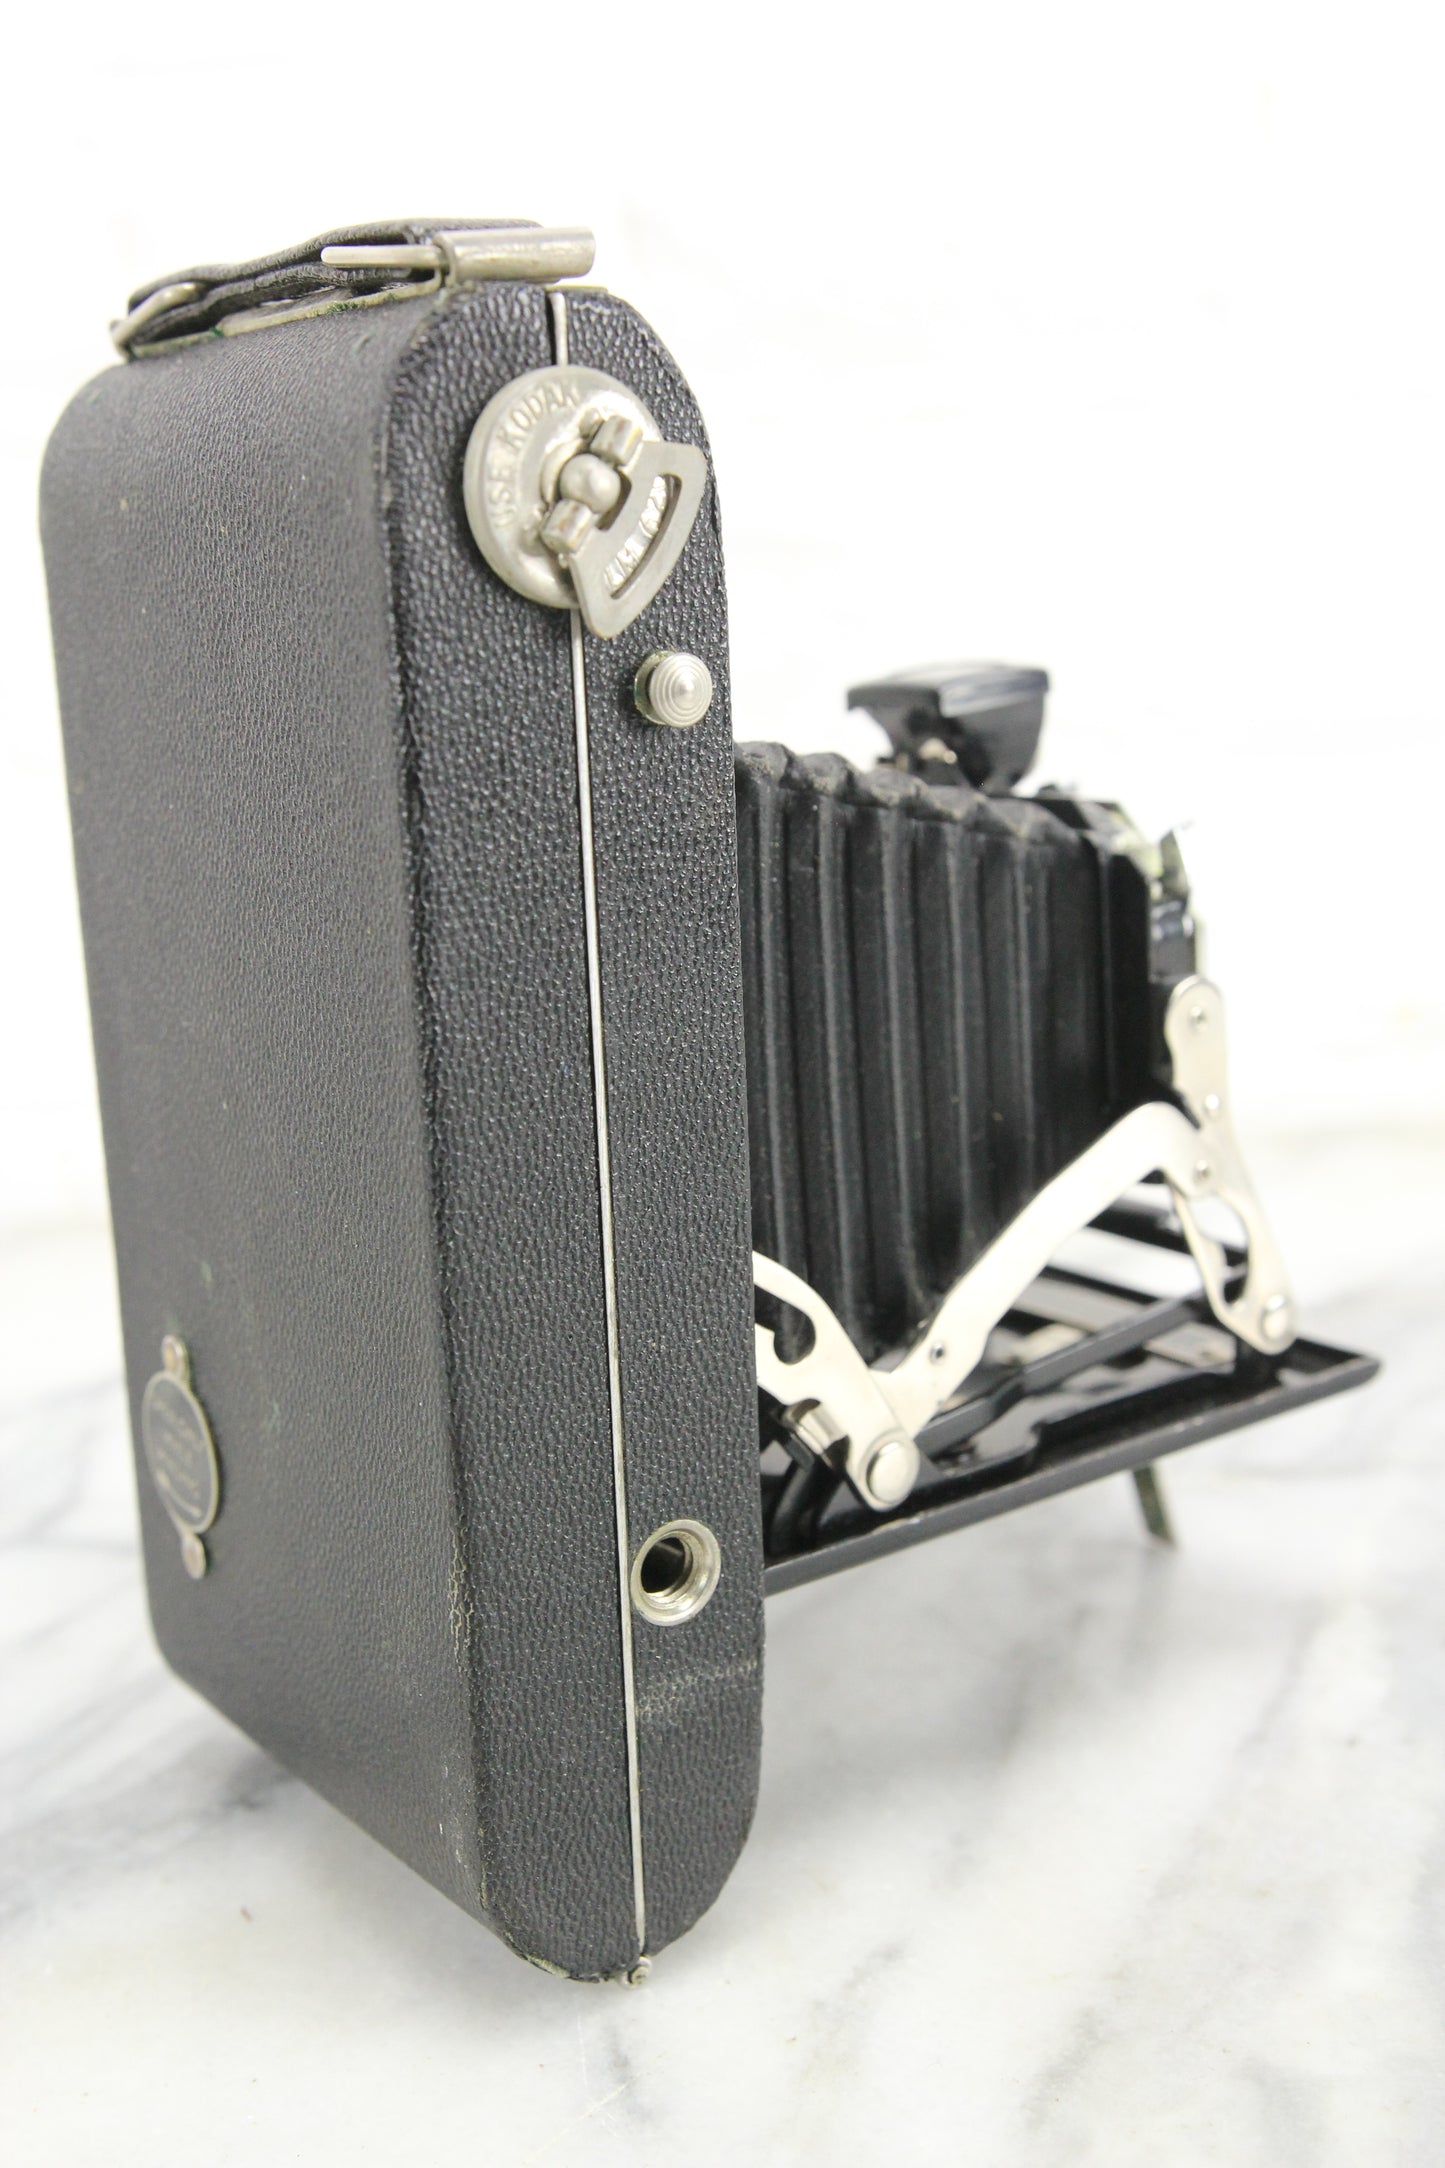 Kodak Junior Six-20 Series II Folding Camera